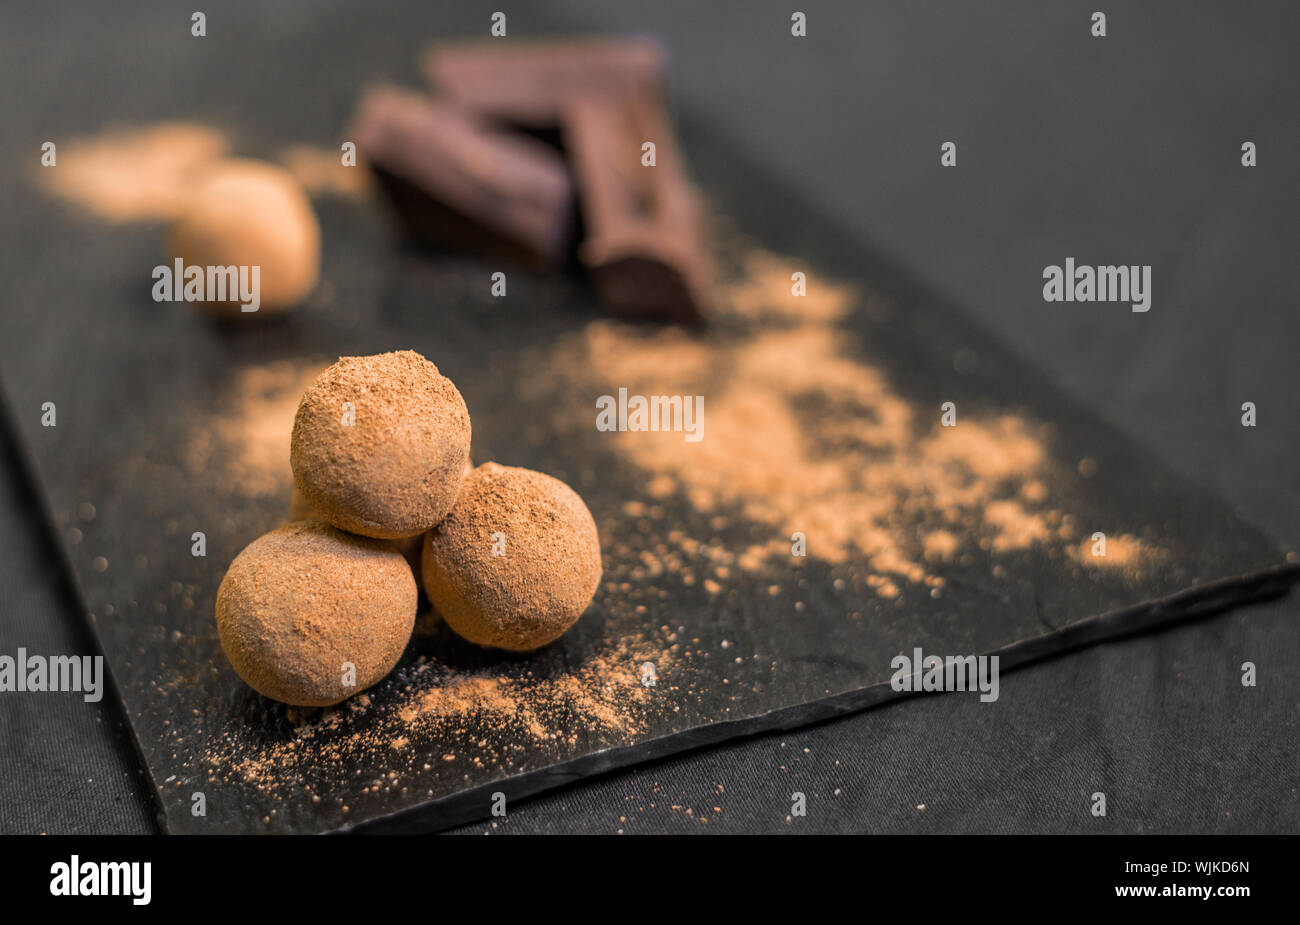 Chocolate Truffle candy recubiertos de cacao en polvo contra el fondo negro. Foto de stock